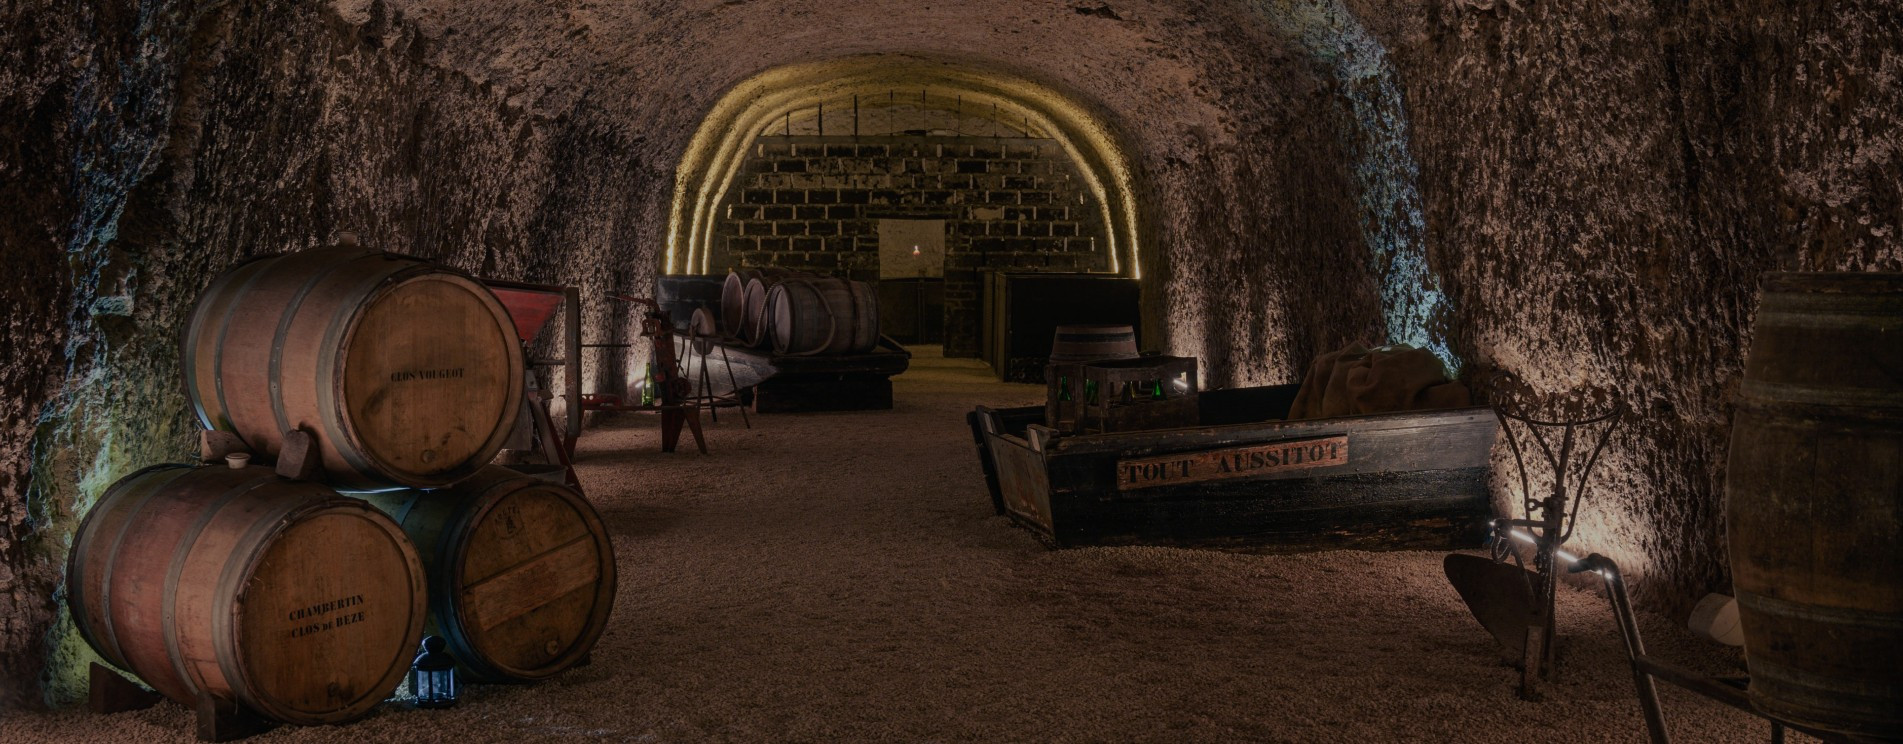 cellars tours